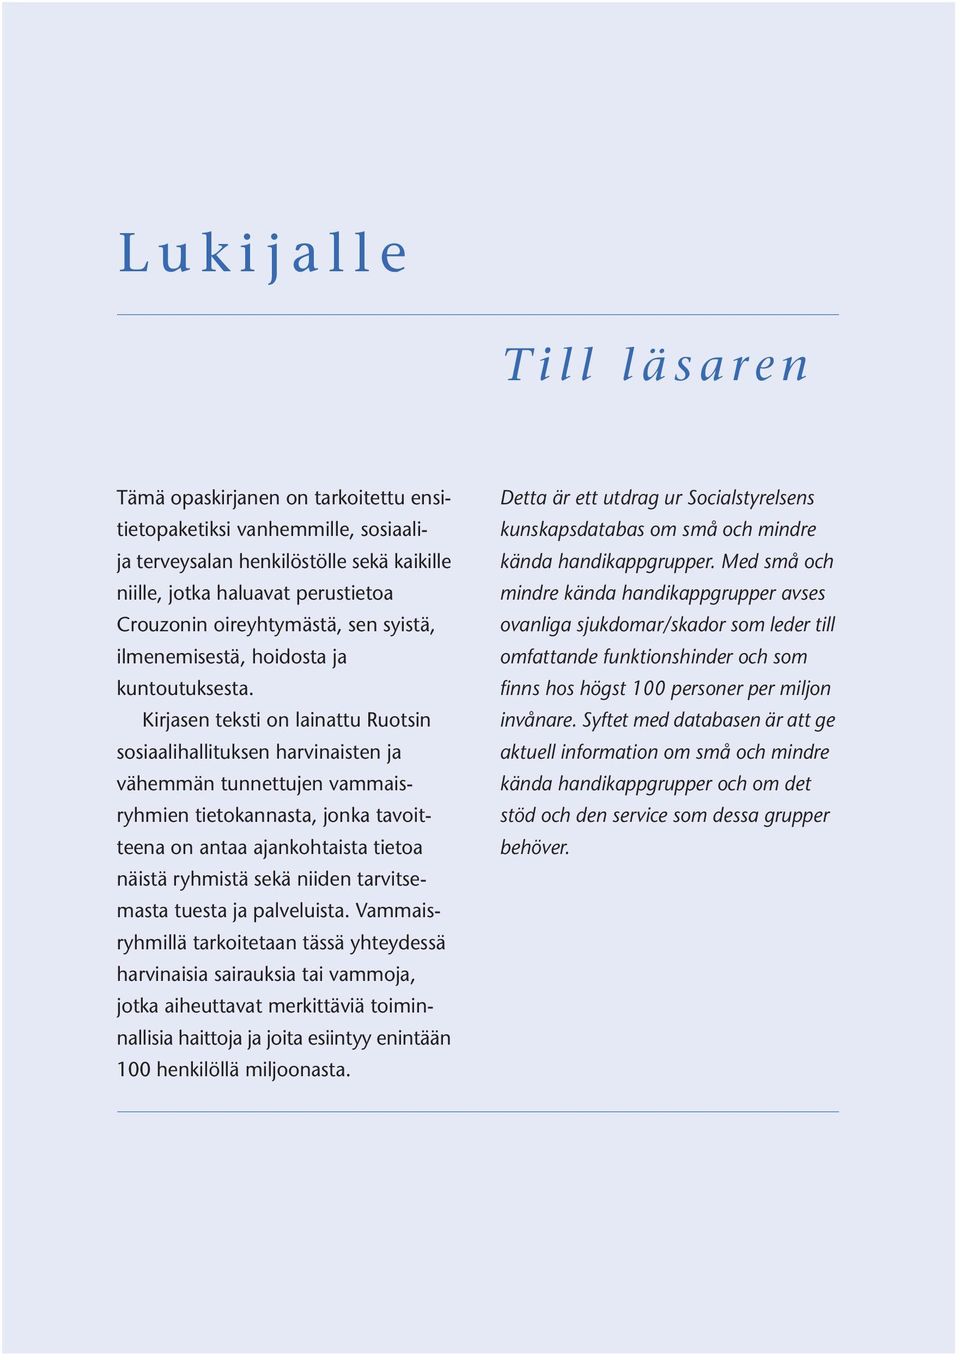 Kirjasen teksti on lainattu Ruotsin sosiaalihallituksen harvinaisten ja vähemmän tunnettujen vammaisryhmien tietokannasta, jonka tavoitteena on antaa ajankohtaista tietoa näistä ryhmistä sekä niiden